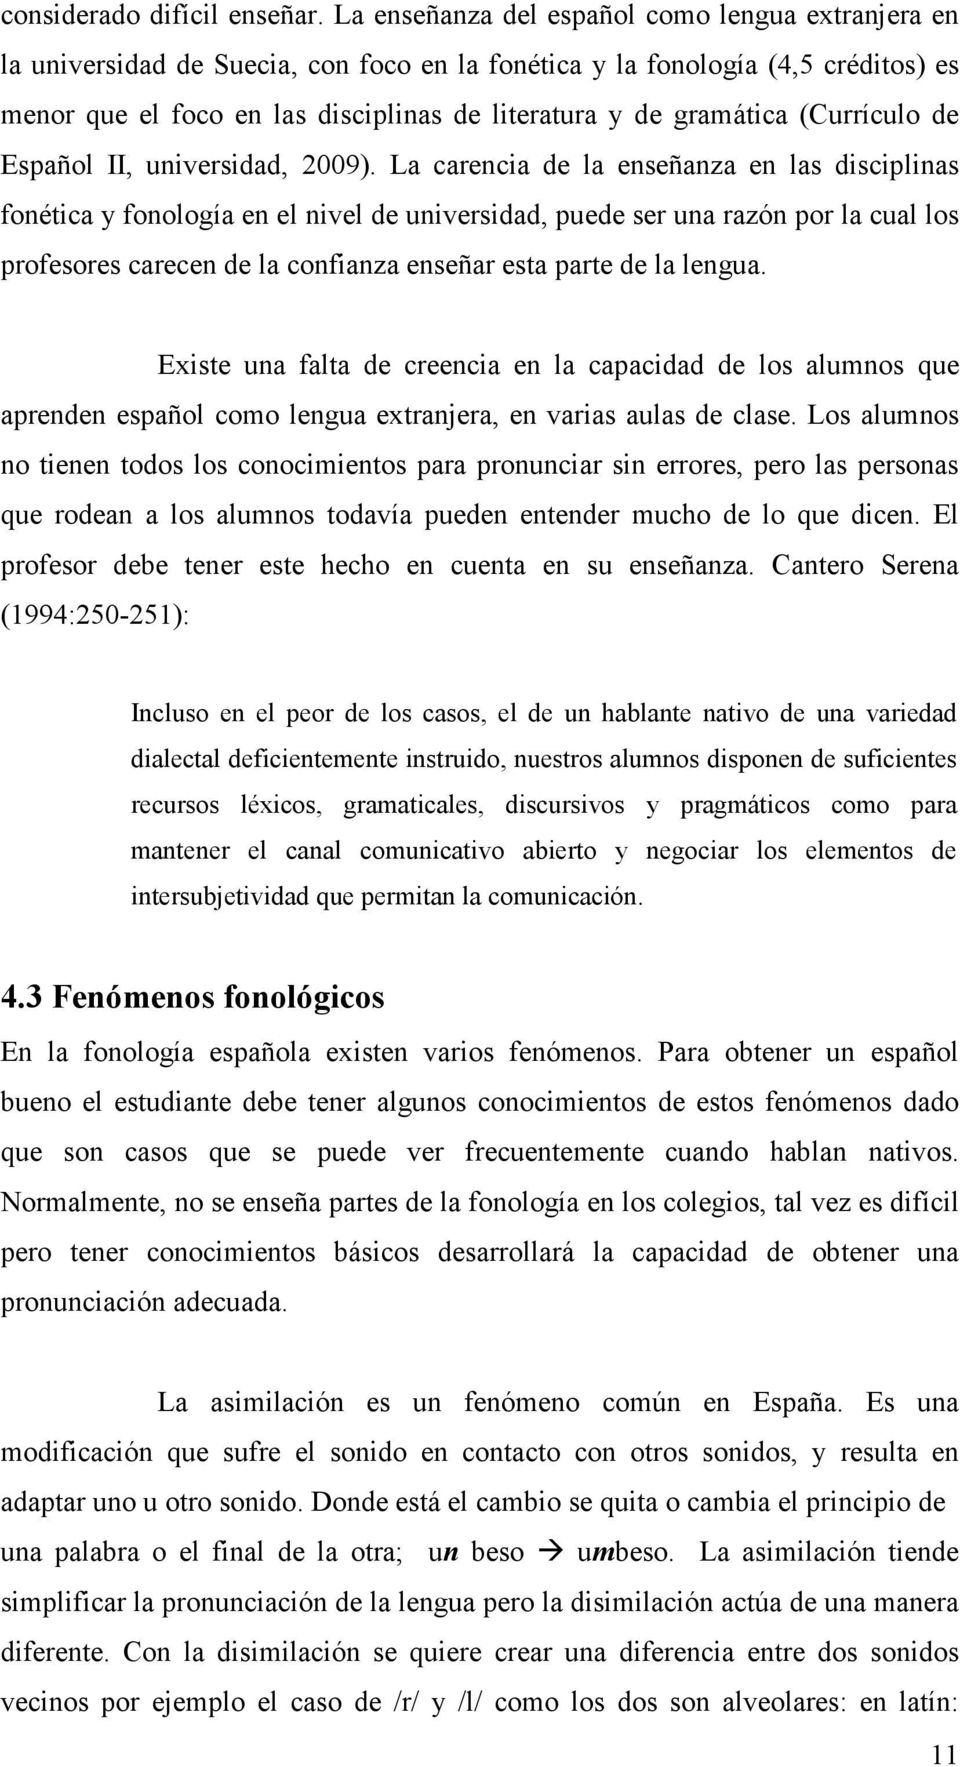 (Currículo de Español II, universidad, 2009).